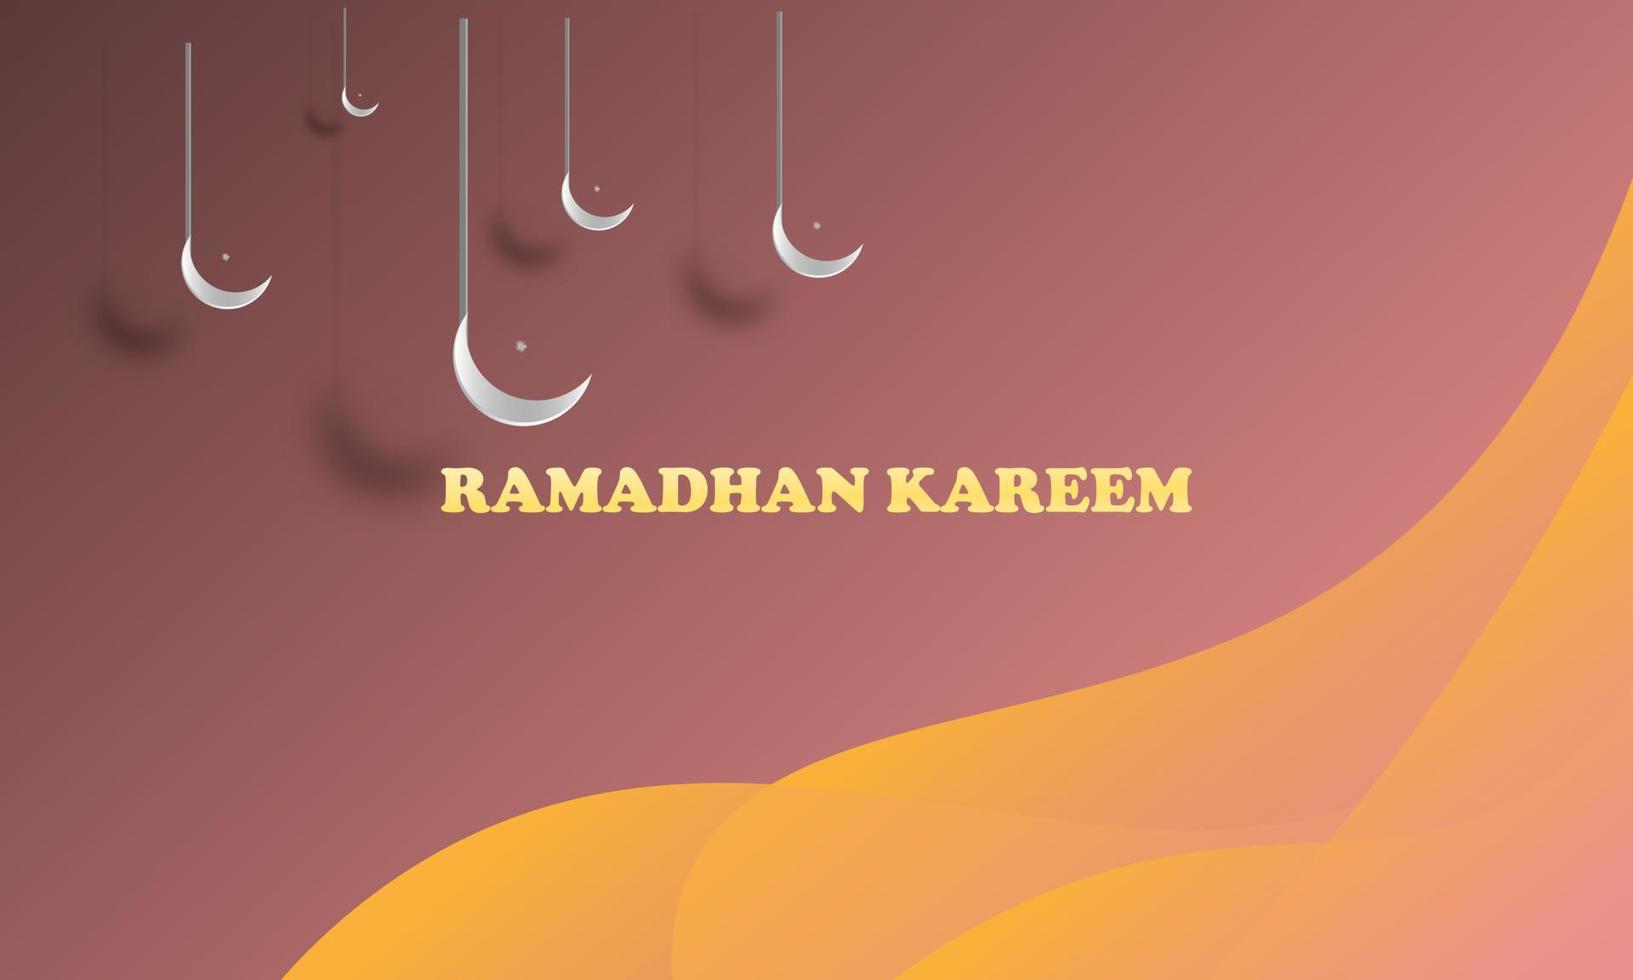 astratto geometrico sfondo Ramadan tema con islamico ornamento mezzaluna rosa pastello colore elegante semplice attraente eps 10 vettore